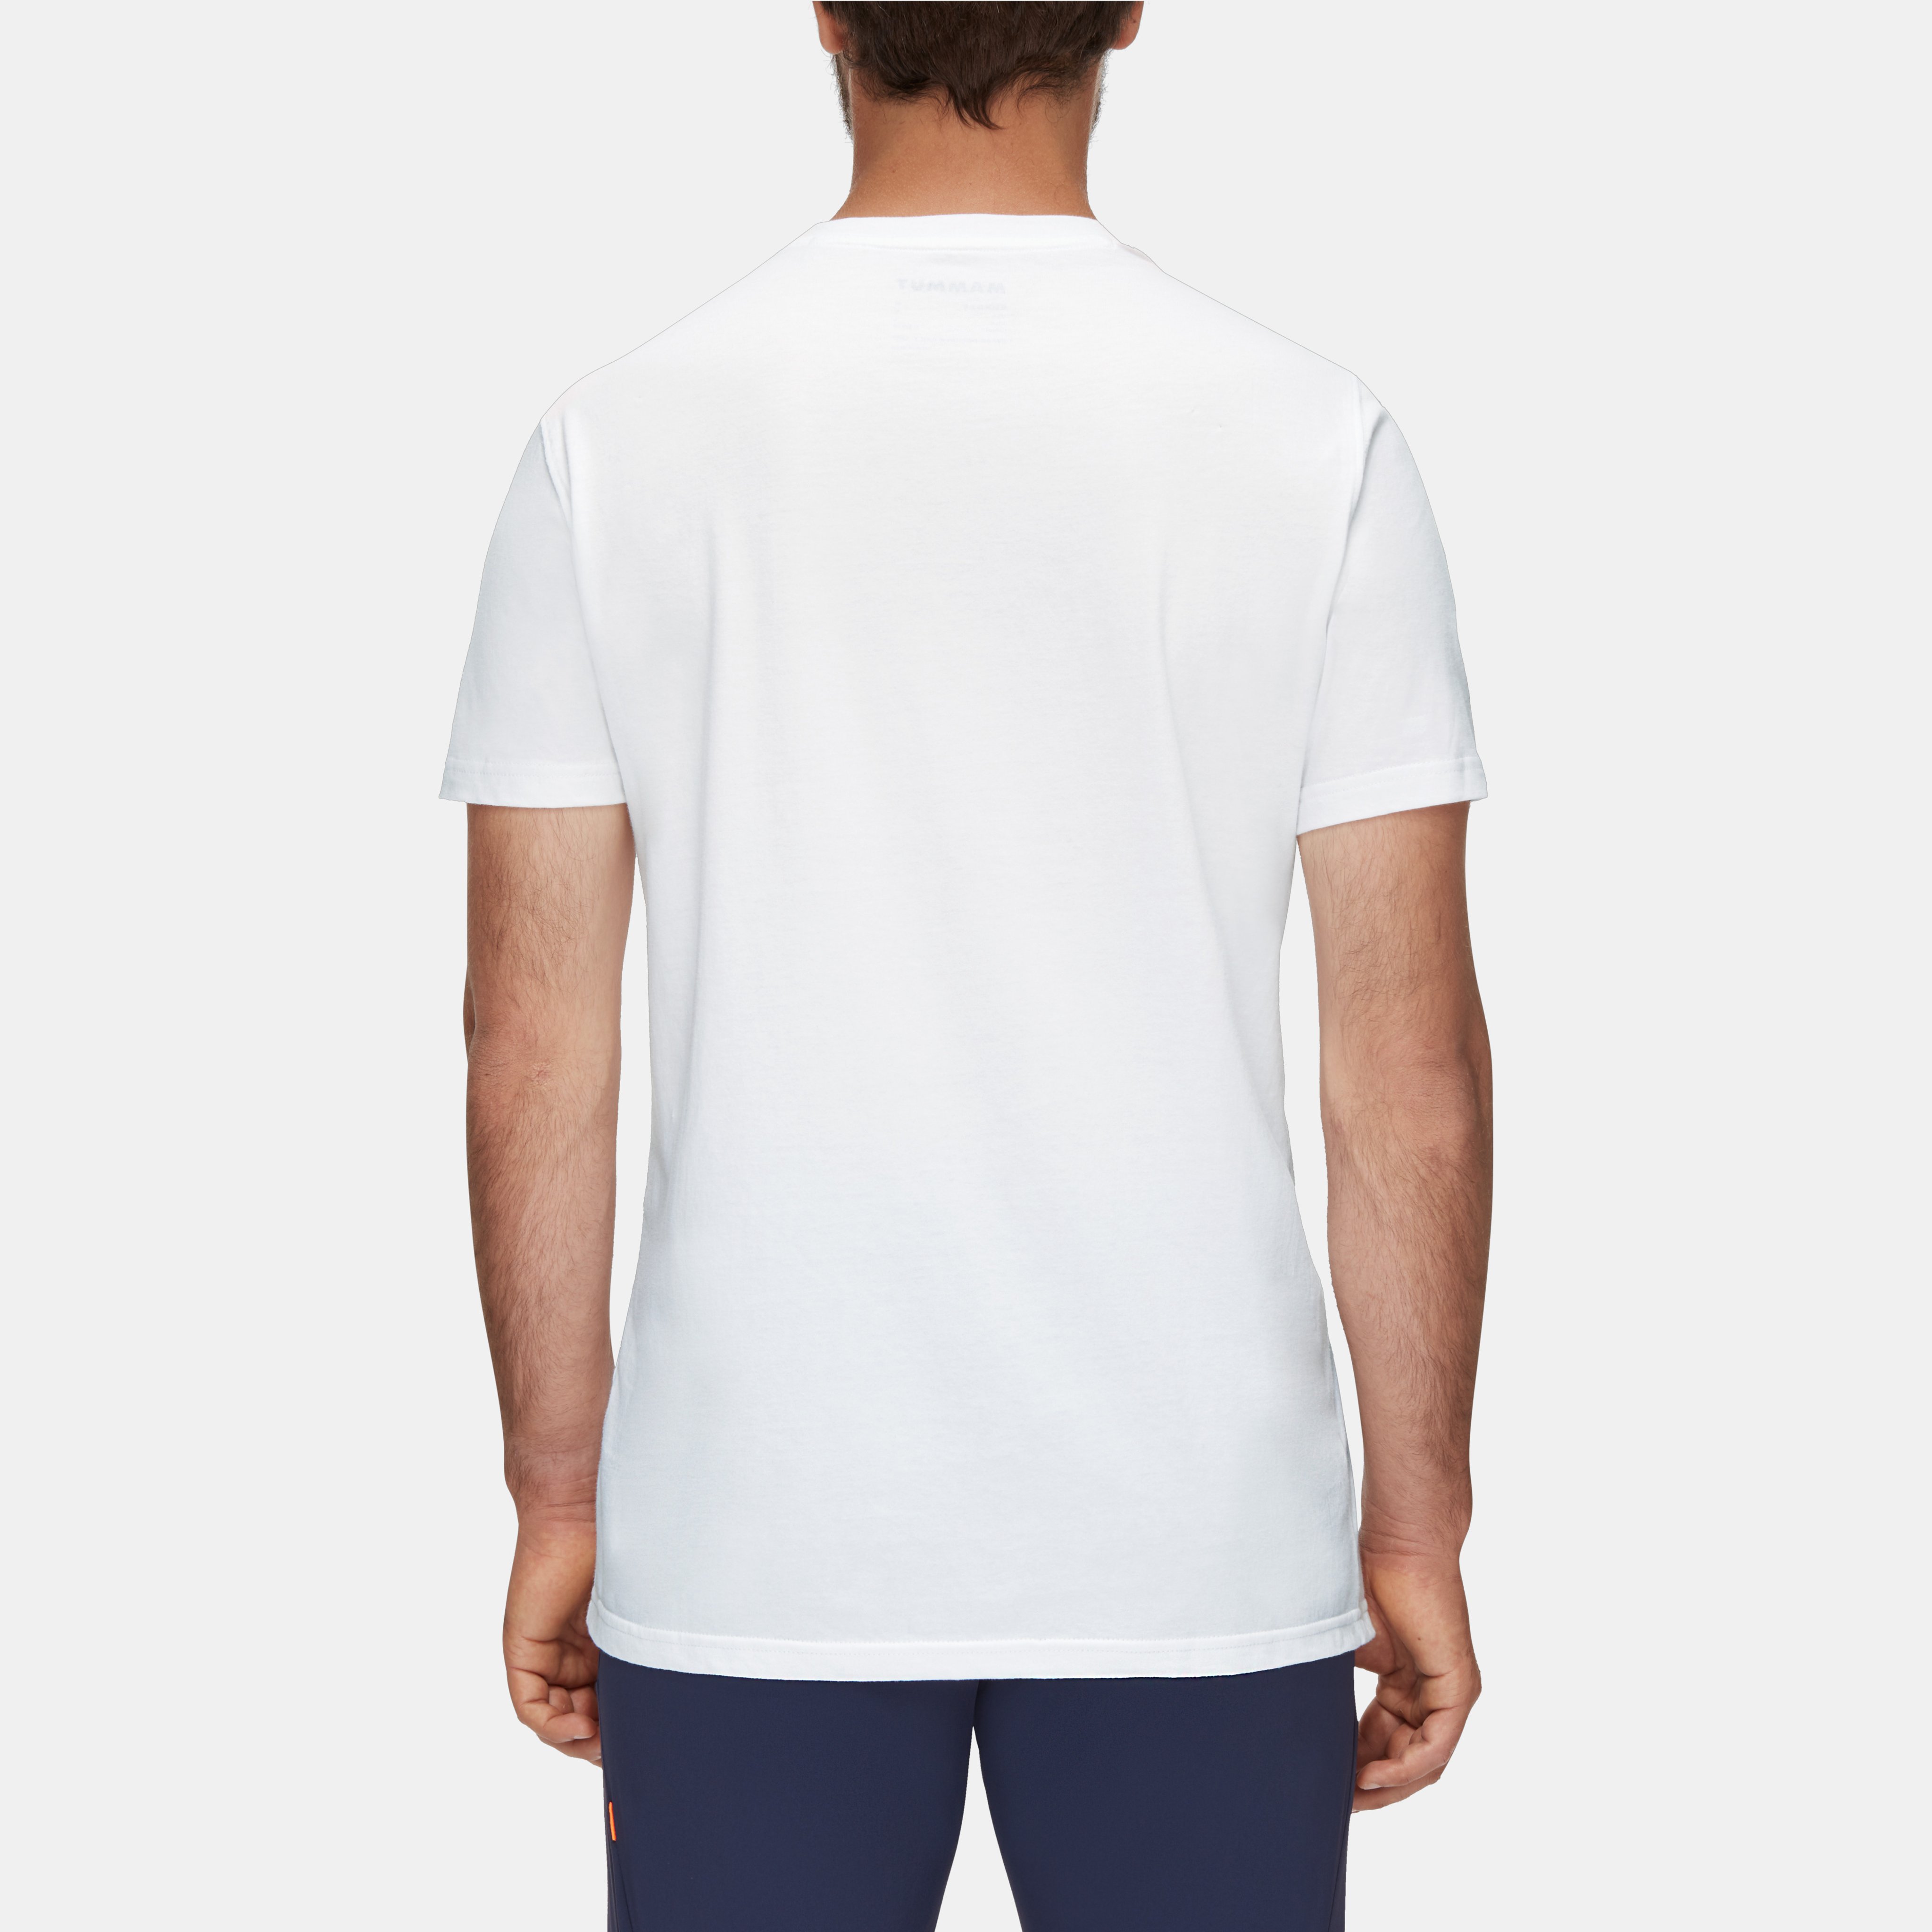 La Liste T-Shirt Men product image